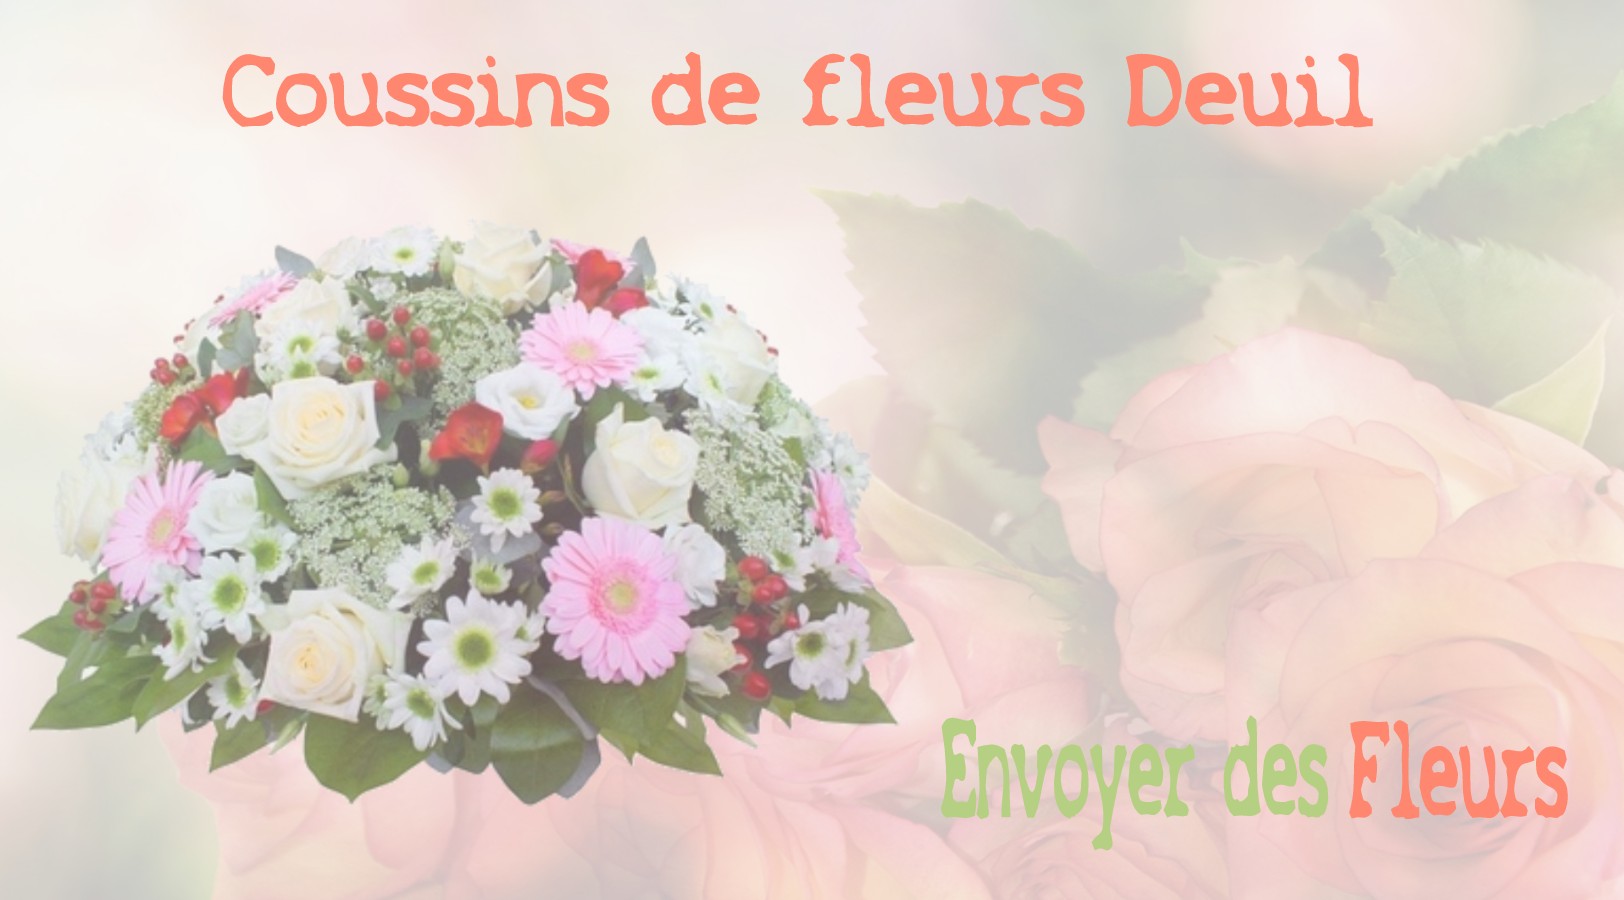 Les coussins de fleurs deuil - LIVRAISON FLEURS DEUIL A MEAUX 77